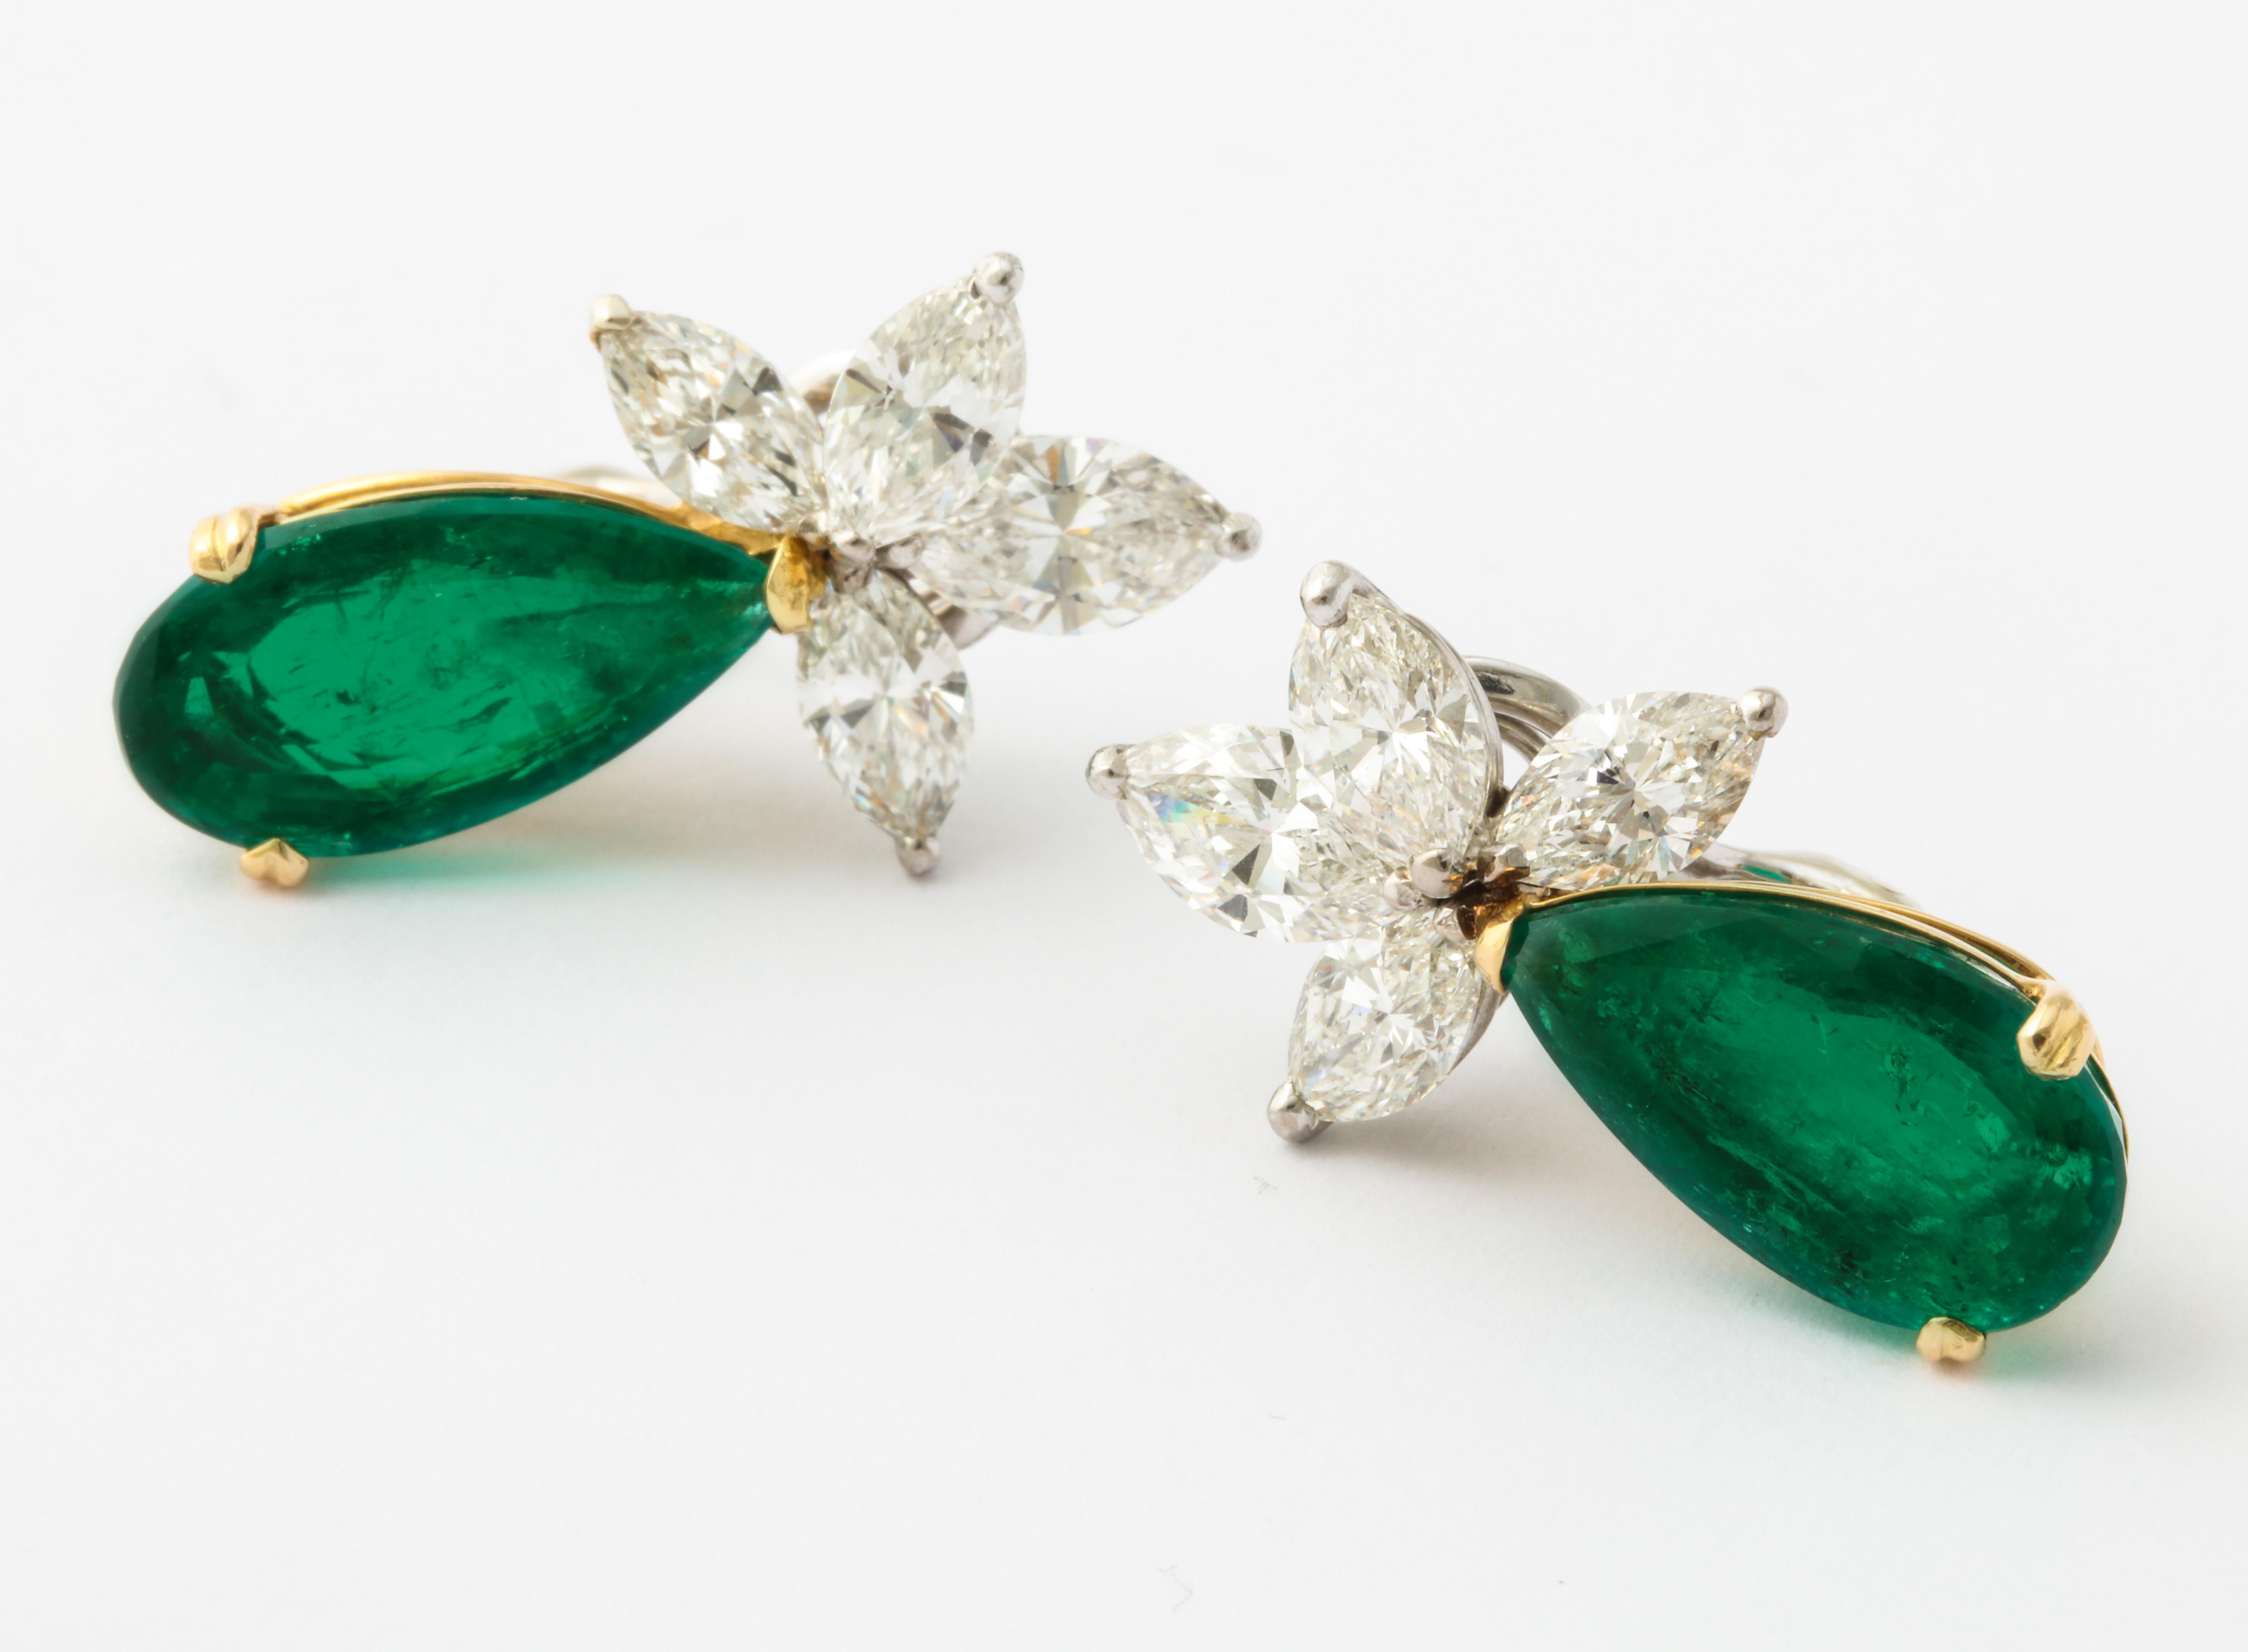 Das wunderschön aufeinander abgestimmte Paar kolumbianischer Smaragde von 5 Karat hängt auf elegante und zeitlose Weise an marquisefarbenen Diamantclustern.  

1 birnenförmiger Smaragd 5,03cts (Gubelin Zertifikat)
1 birnenförmiger Smaragd 5,61cts